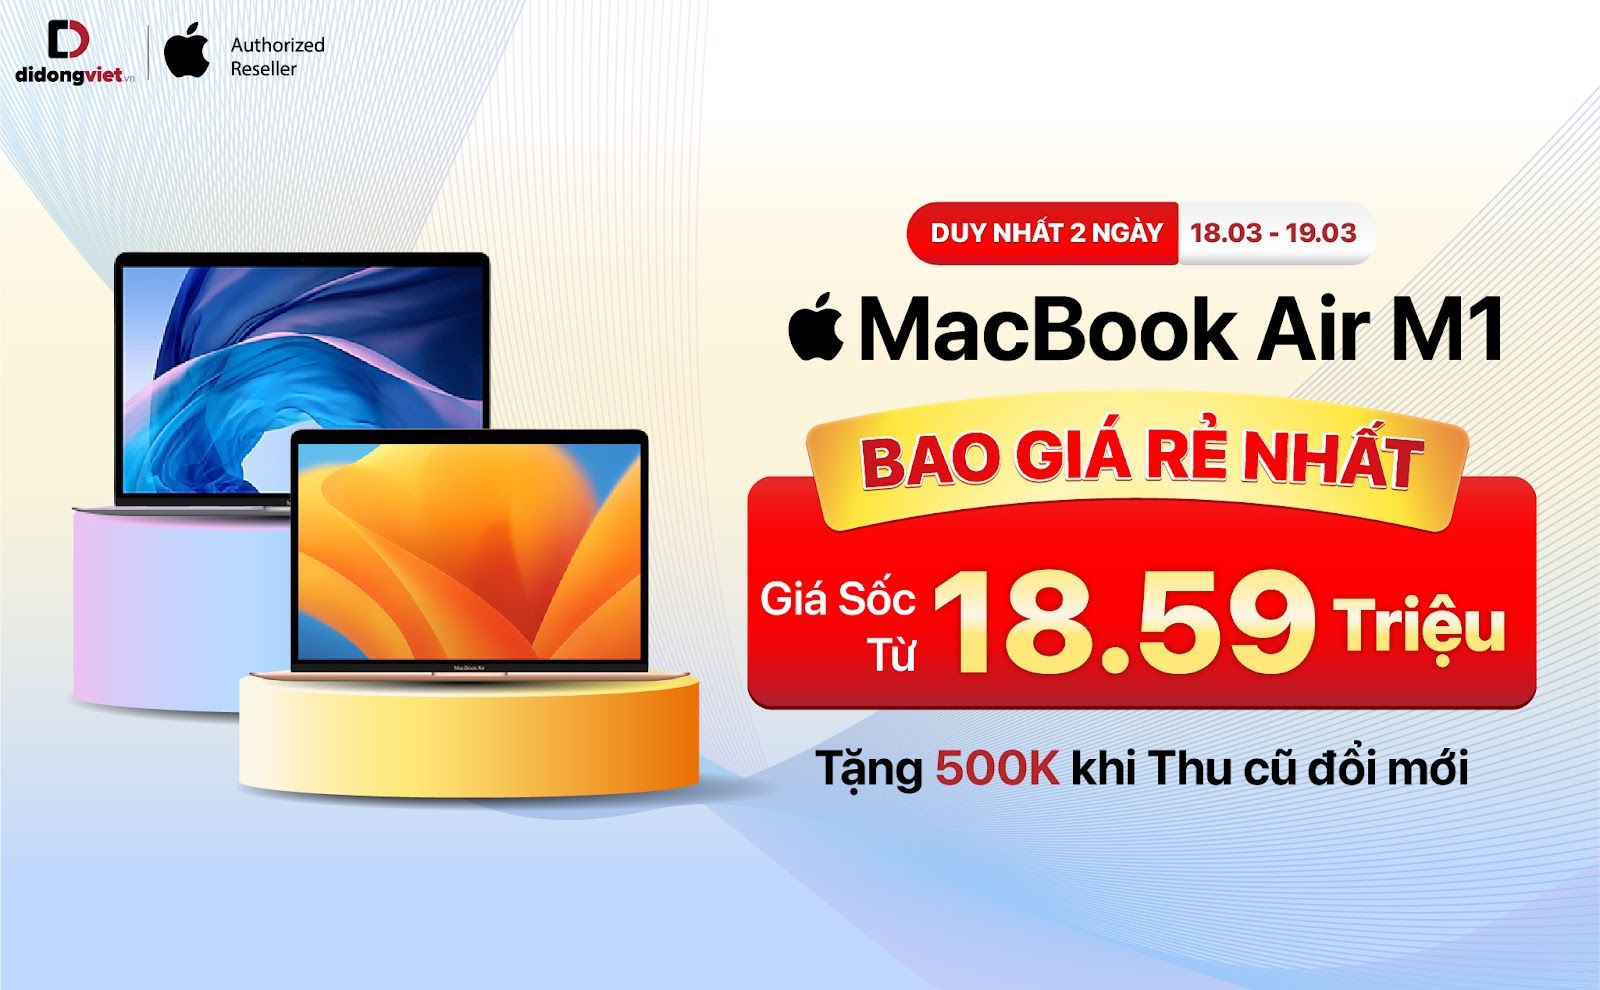 MacBook Air M1 đang rẻ nhất từ trước đến nay tại thị trường Việt Nam